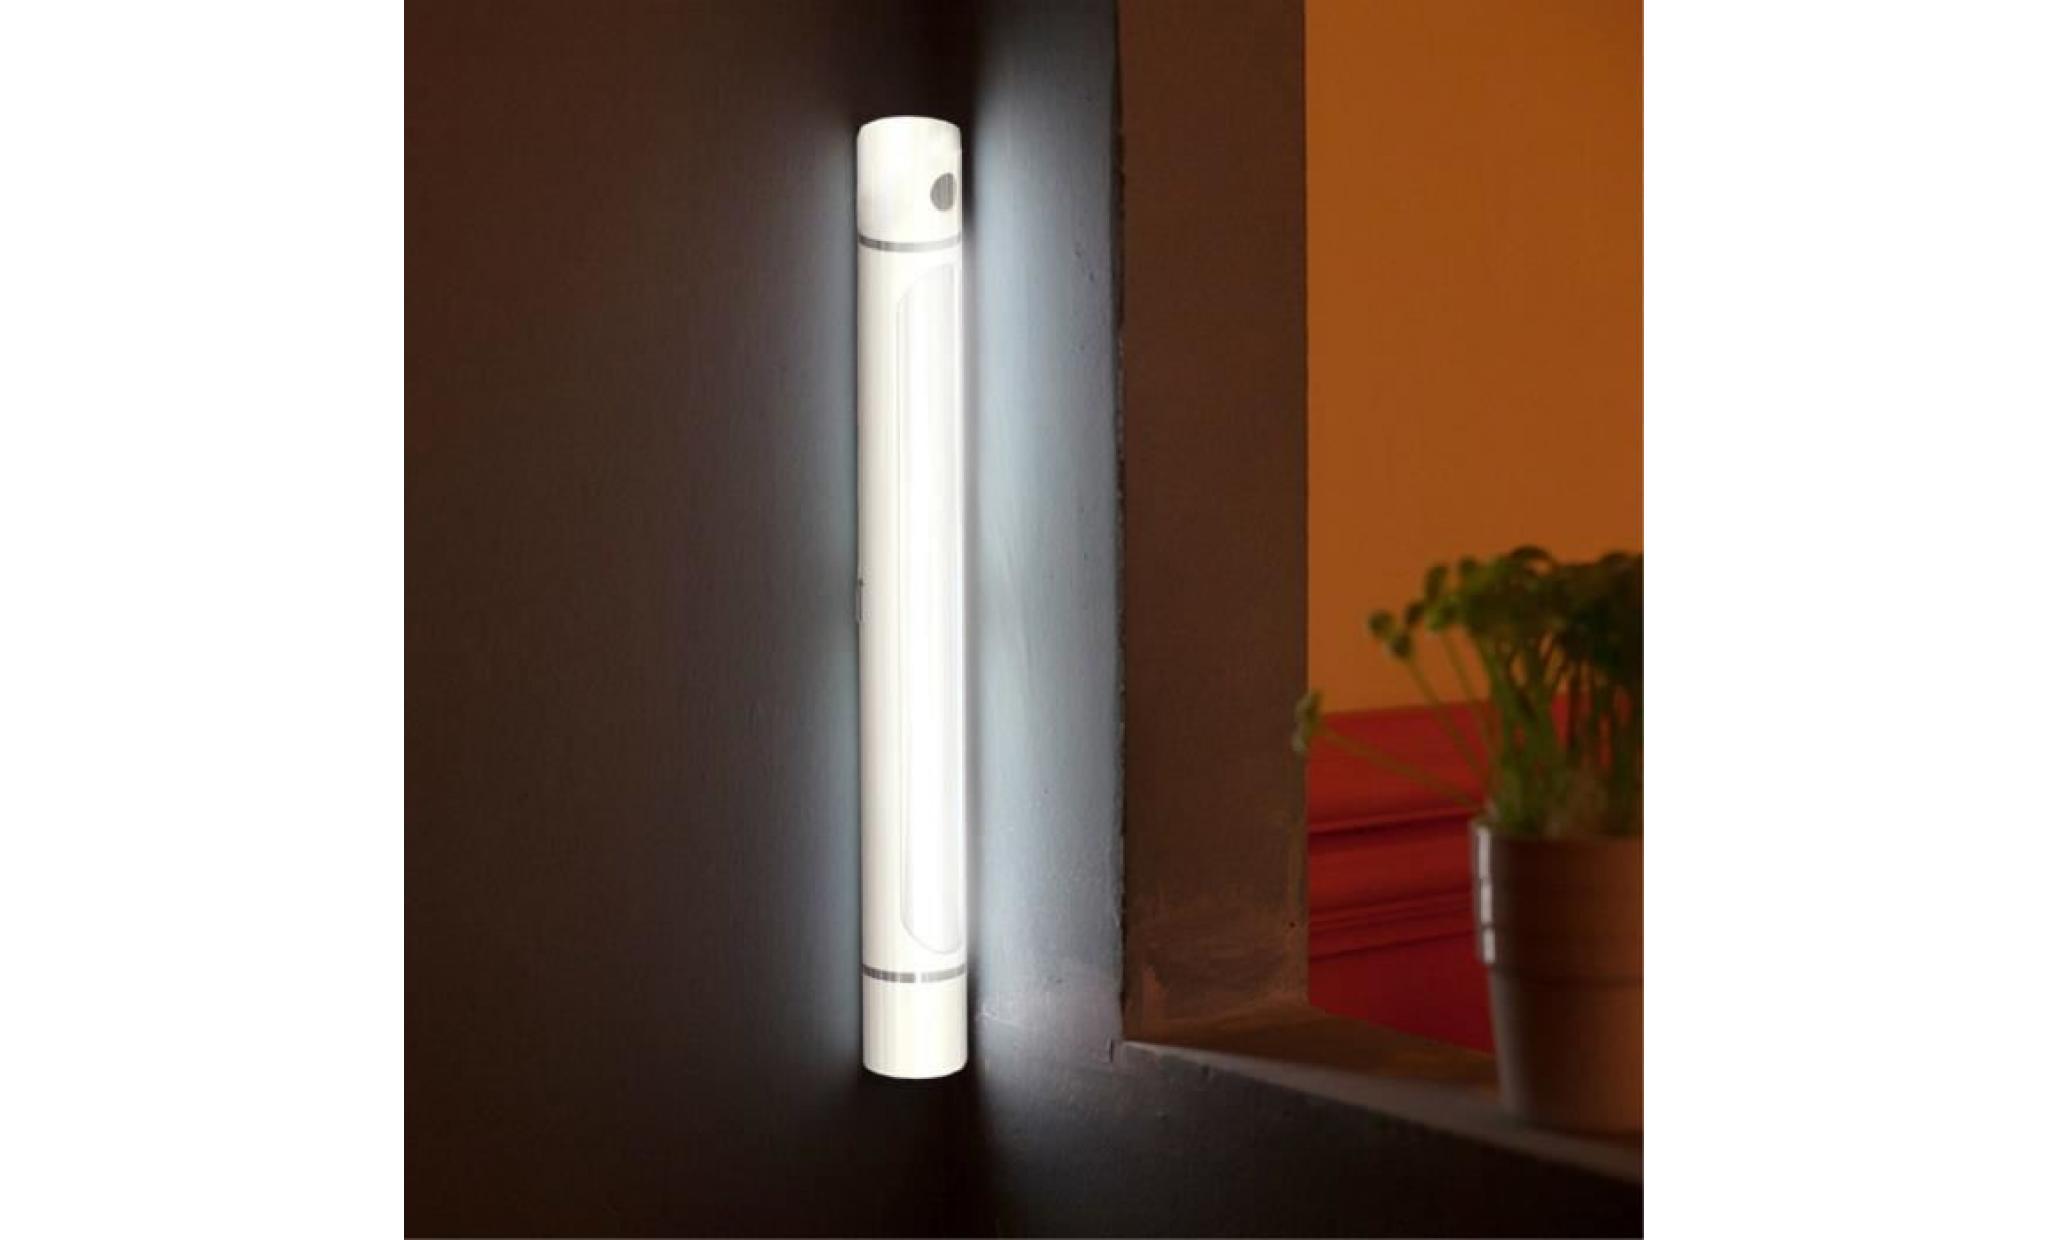 27cm sous l'armoire armoire étagère lampe lumière de bande pour la maison cuisine wall light     @batangerr19586